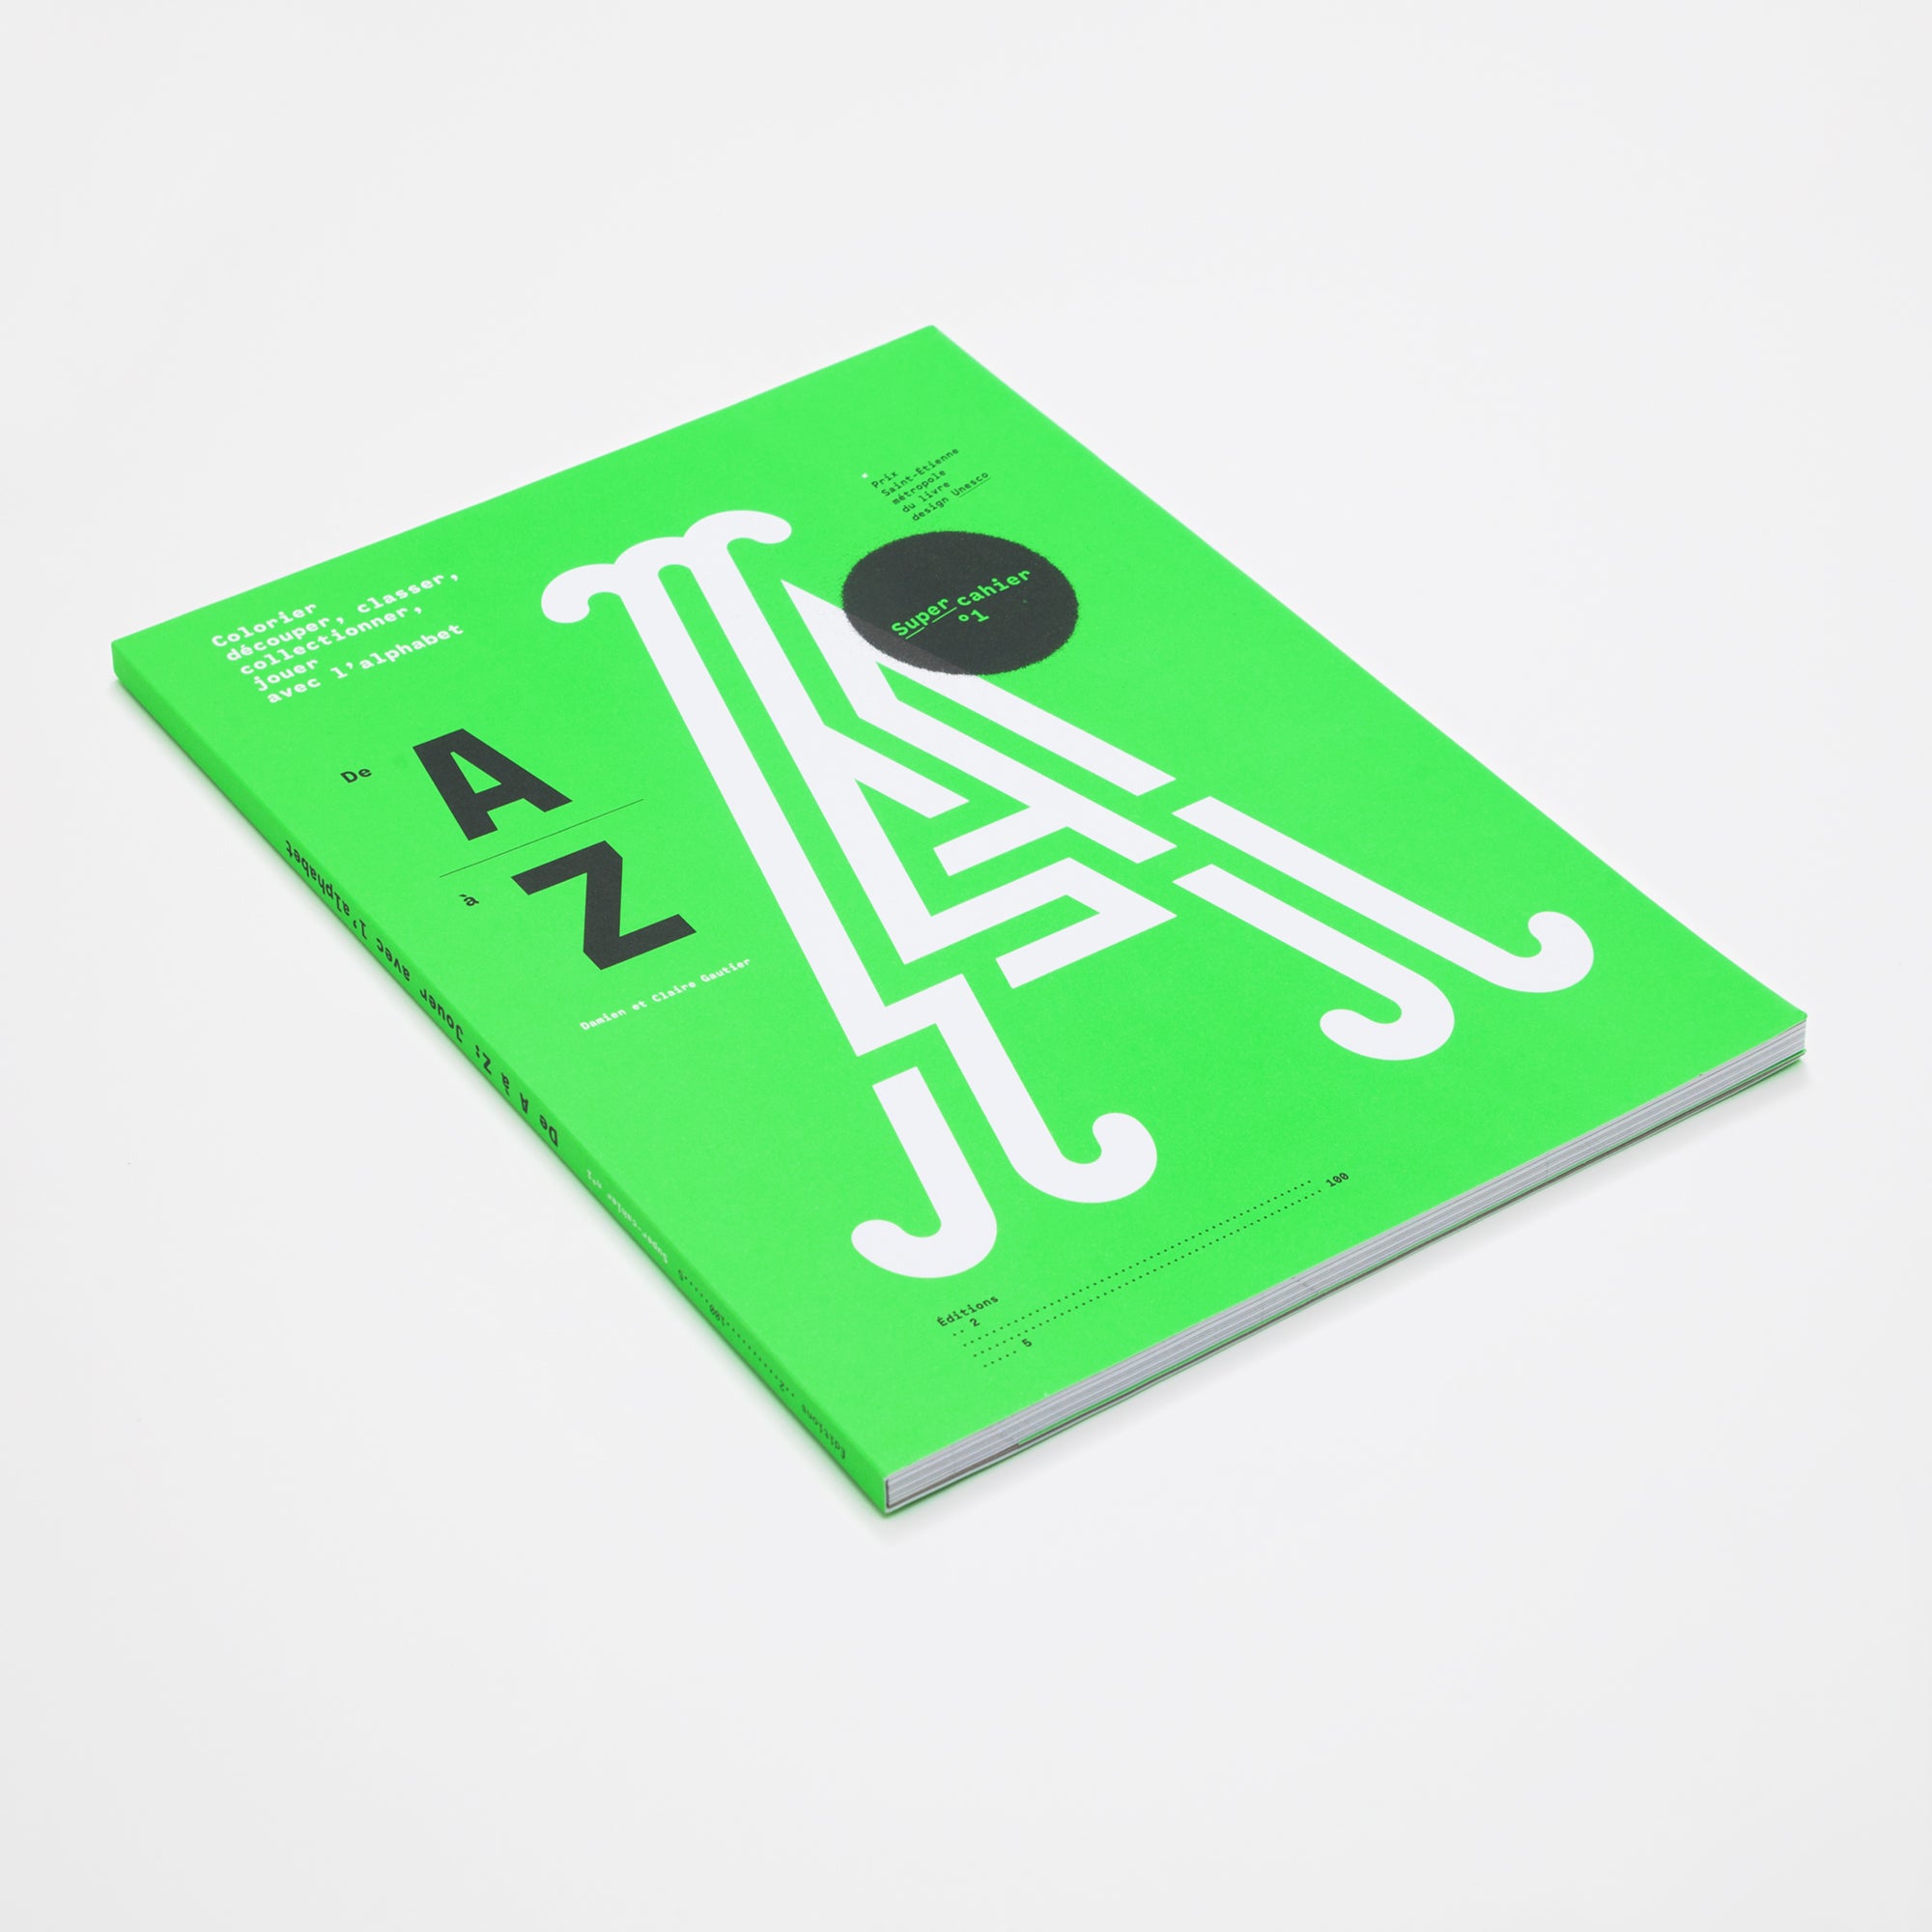 De A à Z: Jouer avec l'alphabet - Super-cahier n°1 – Éditions 205